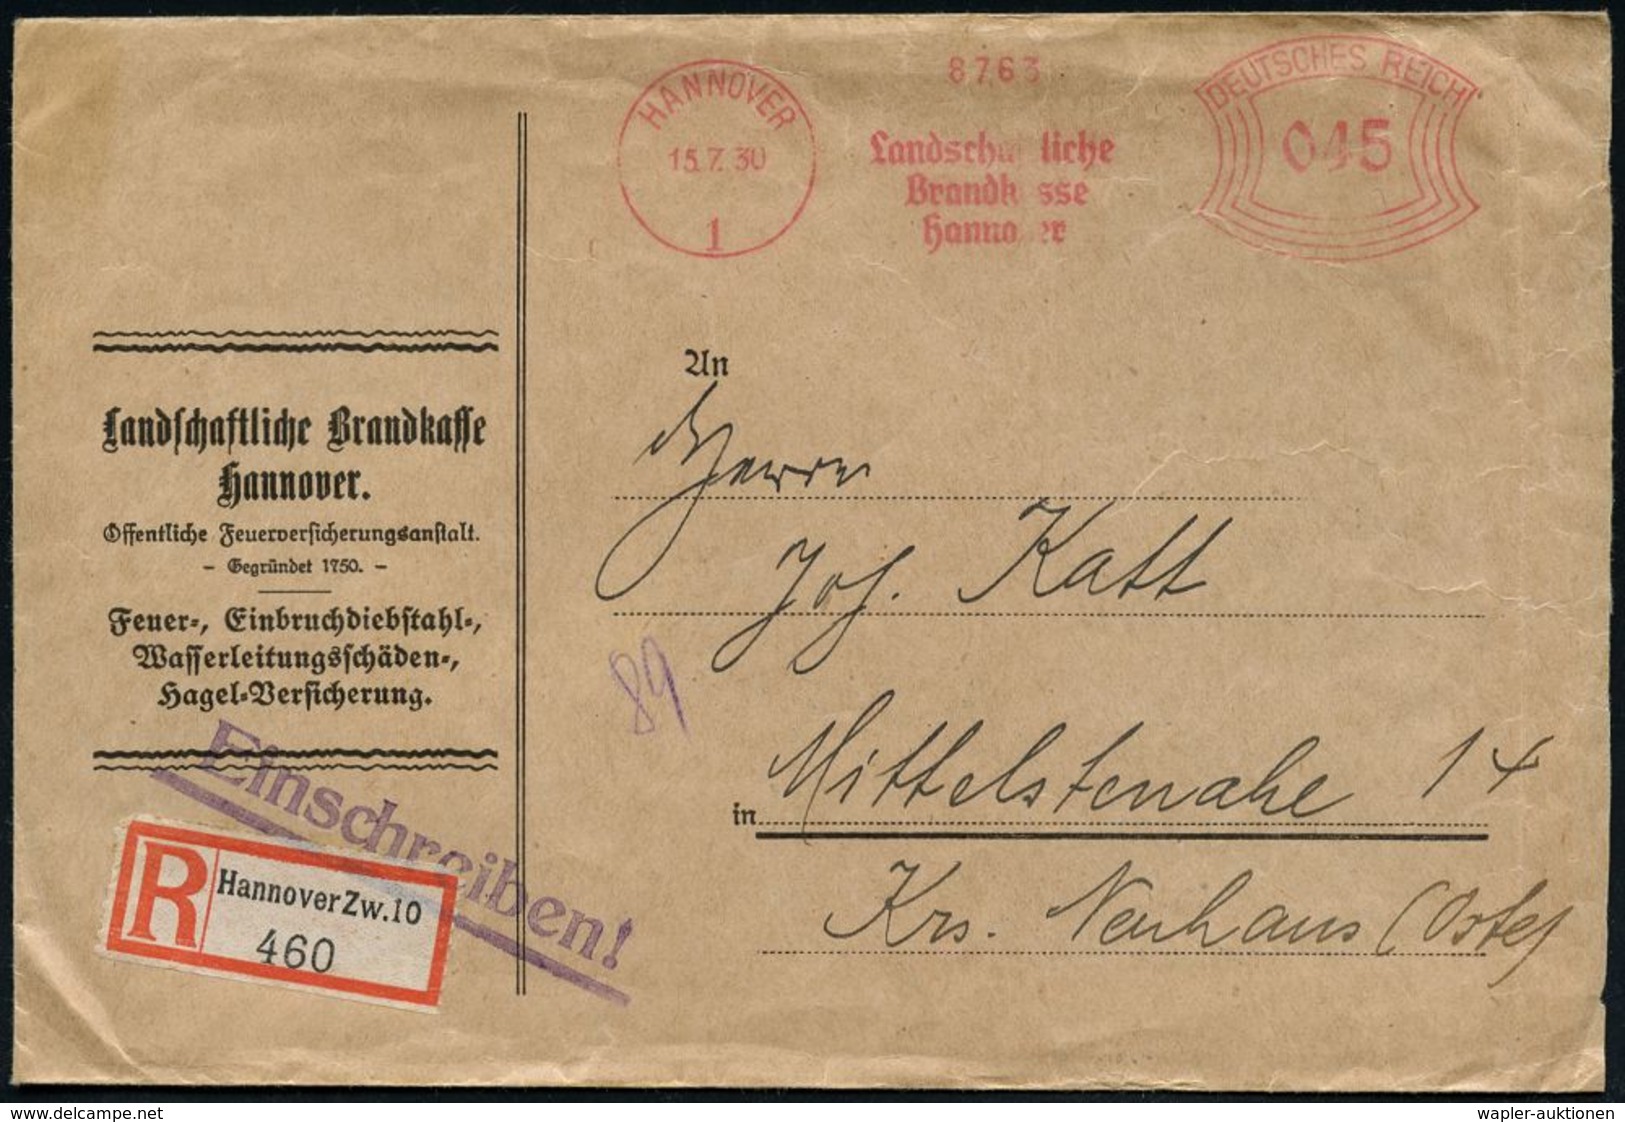 FEUERWEHR / BRANDVERHÜTUNG & -BEKÄMPFUNG : HANNOVER/ 1/ Landschaftliche/ Brandkasse.. 1930 (15.7.) AFS 045 Pf. + RZ: Han - Firemen